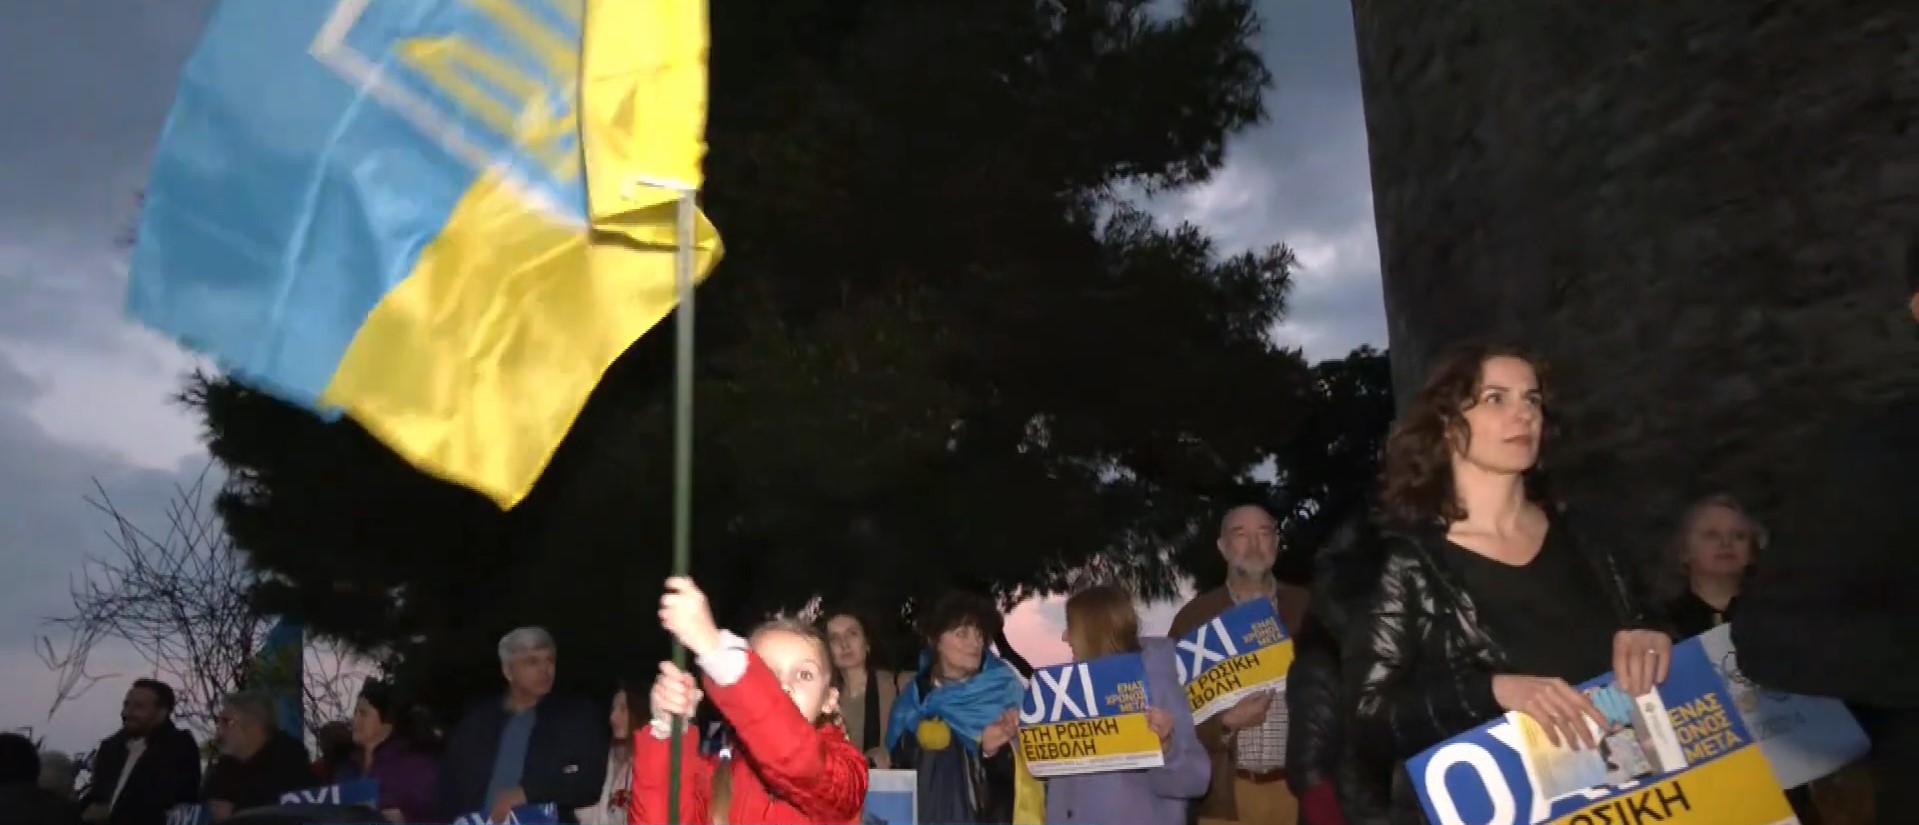 Θεσσαλονίκη: Εκδηλώσεις για την εισβολή στην Ουκρανία